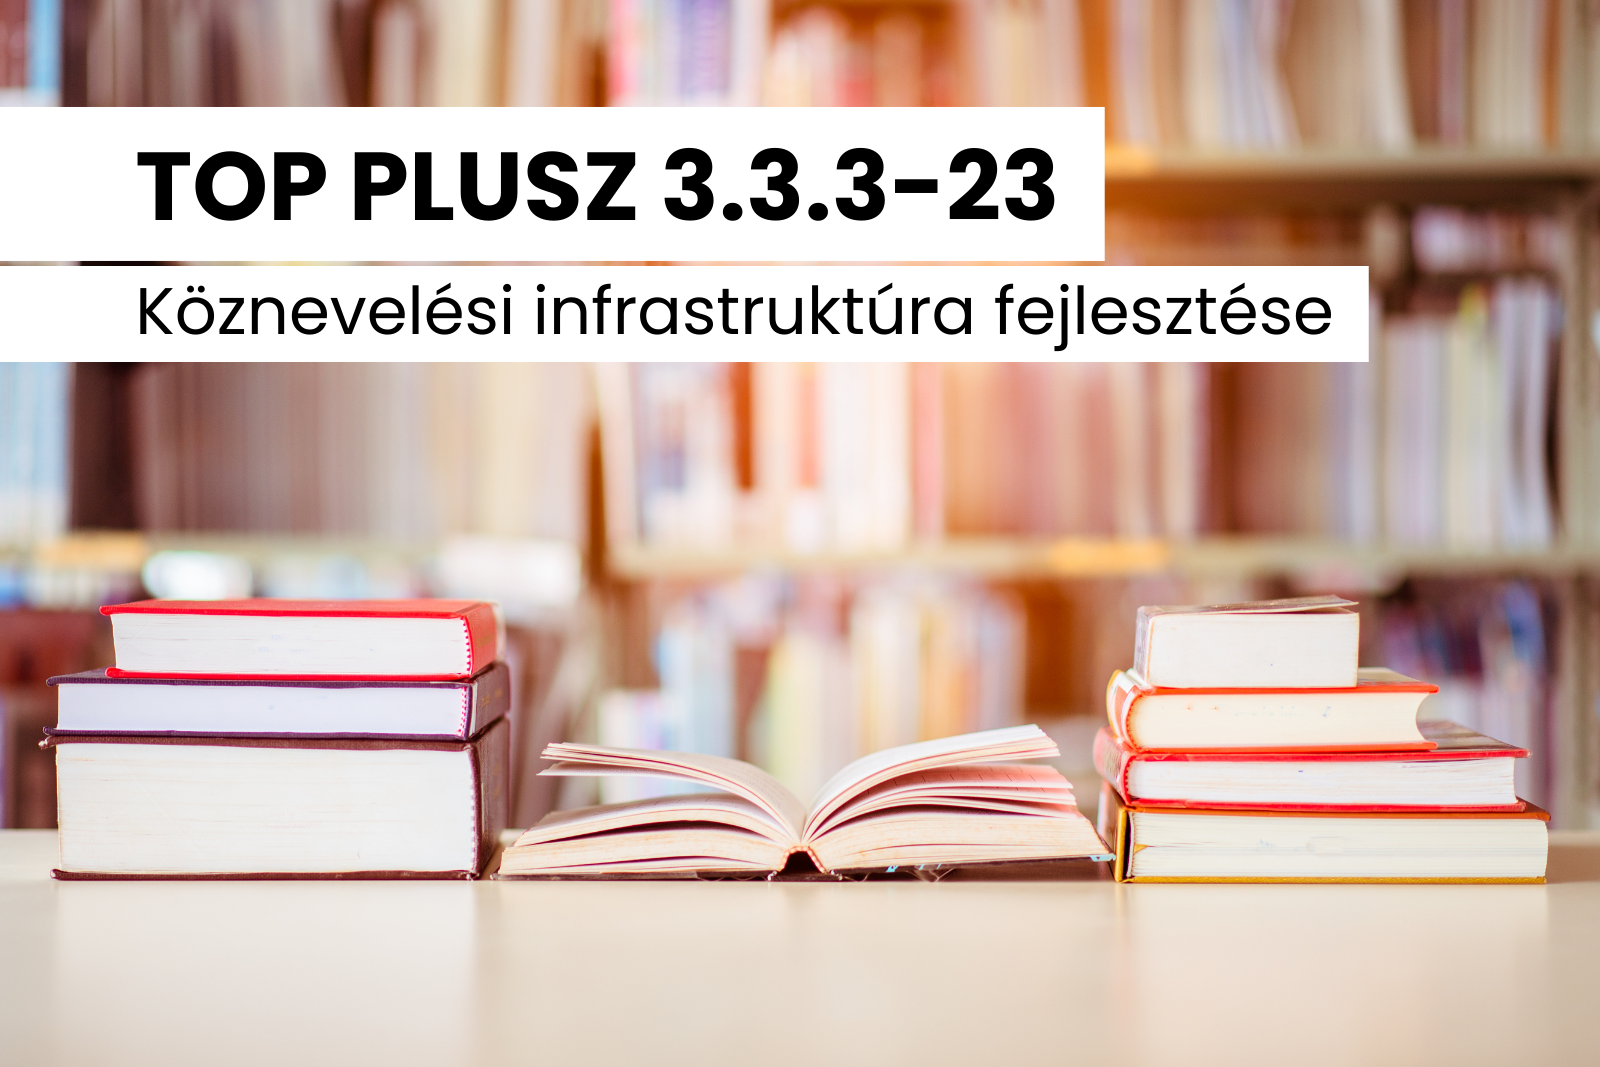 TOP PLUSZ 3.3.3-23 Köznevelési infrastruktúra fejlesztése